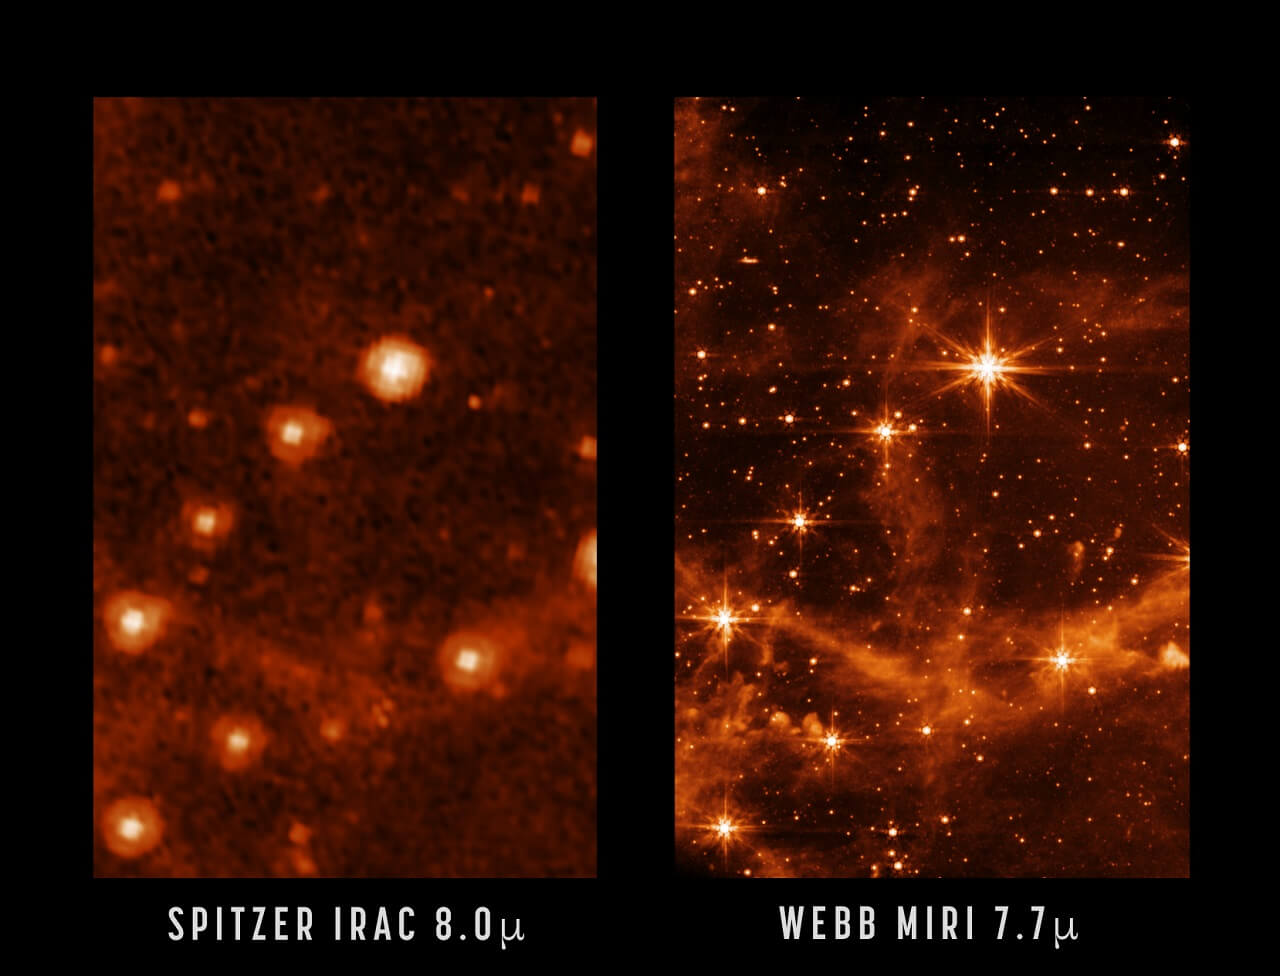 ფოტოების შედარება, რომელიც გვიჩვენებს, თუ რა შეუძლია ჯეიმს ვების კოსმოსურ ტელესკოპს — #1tvმეცნიერება